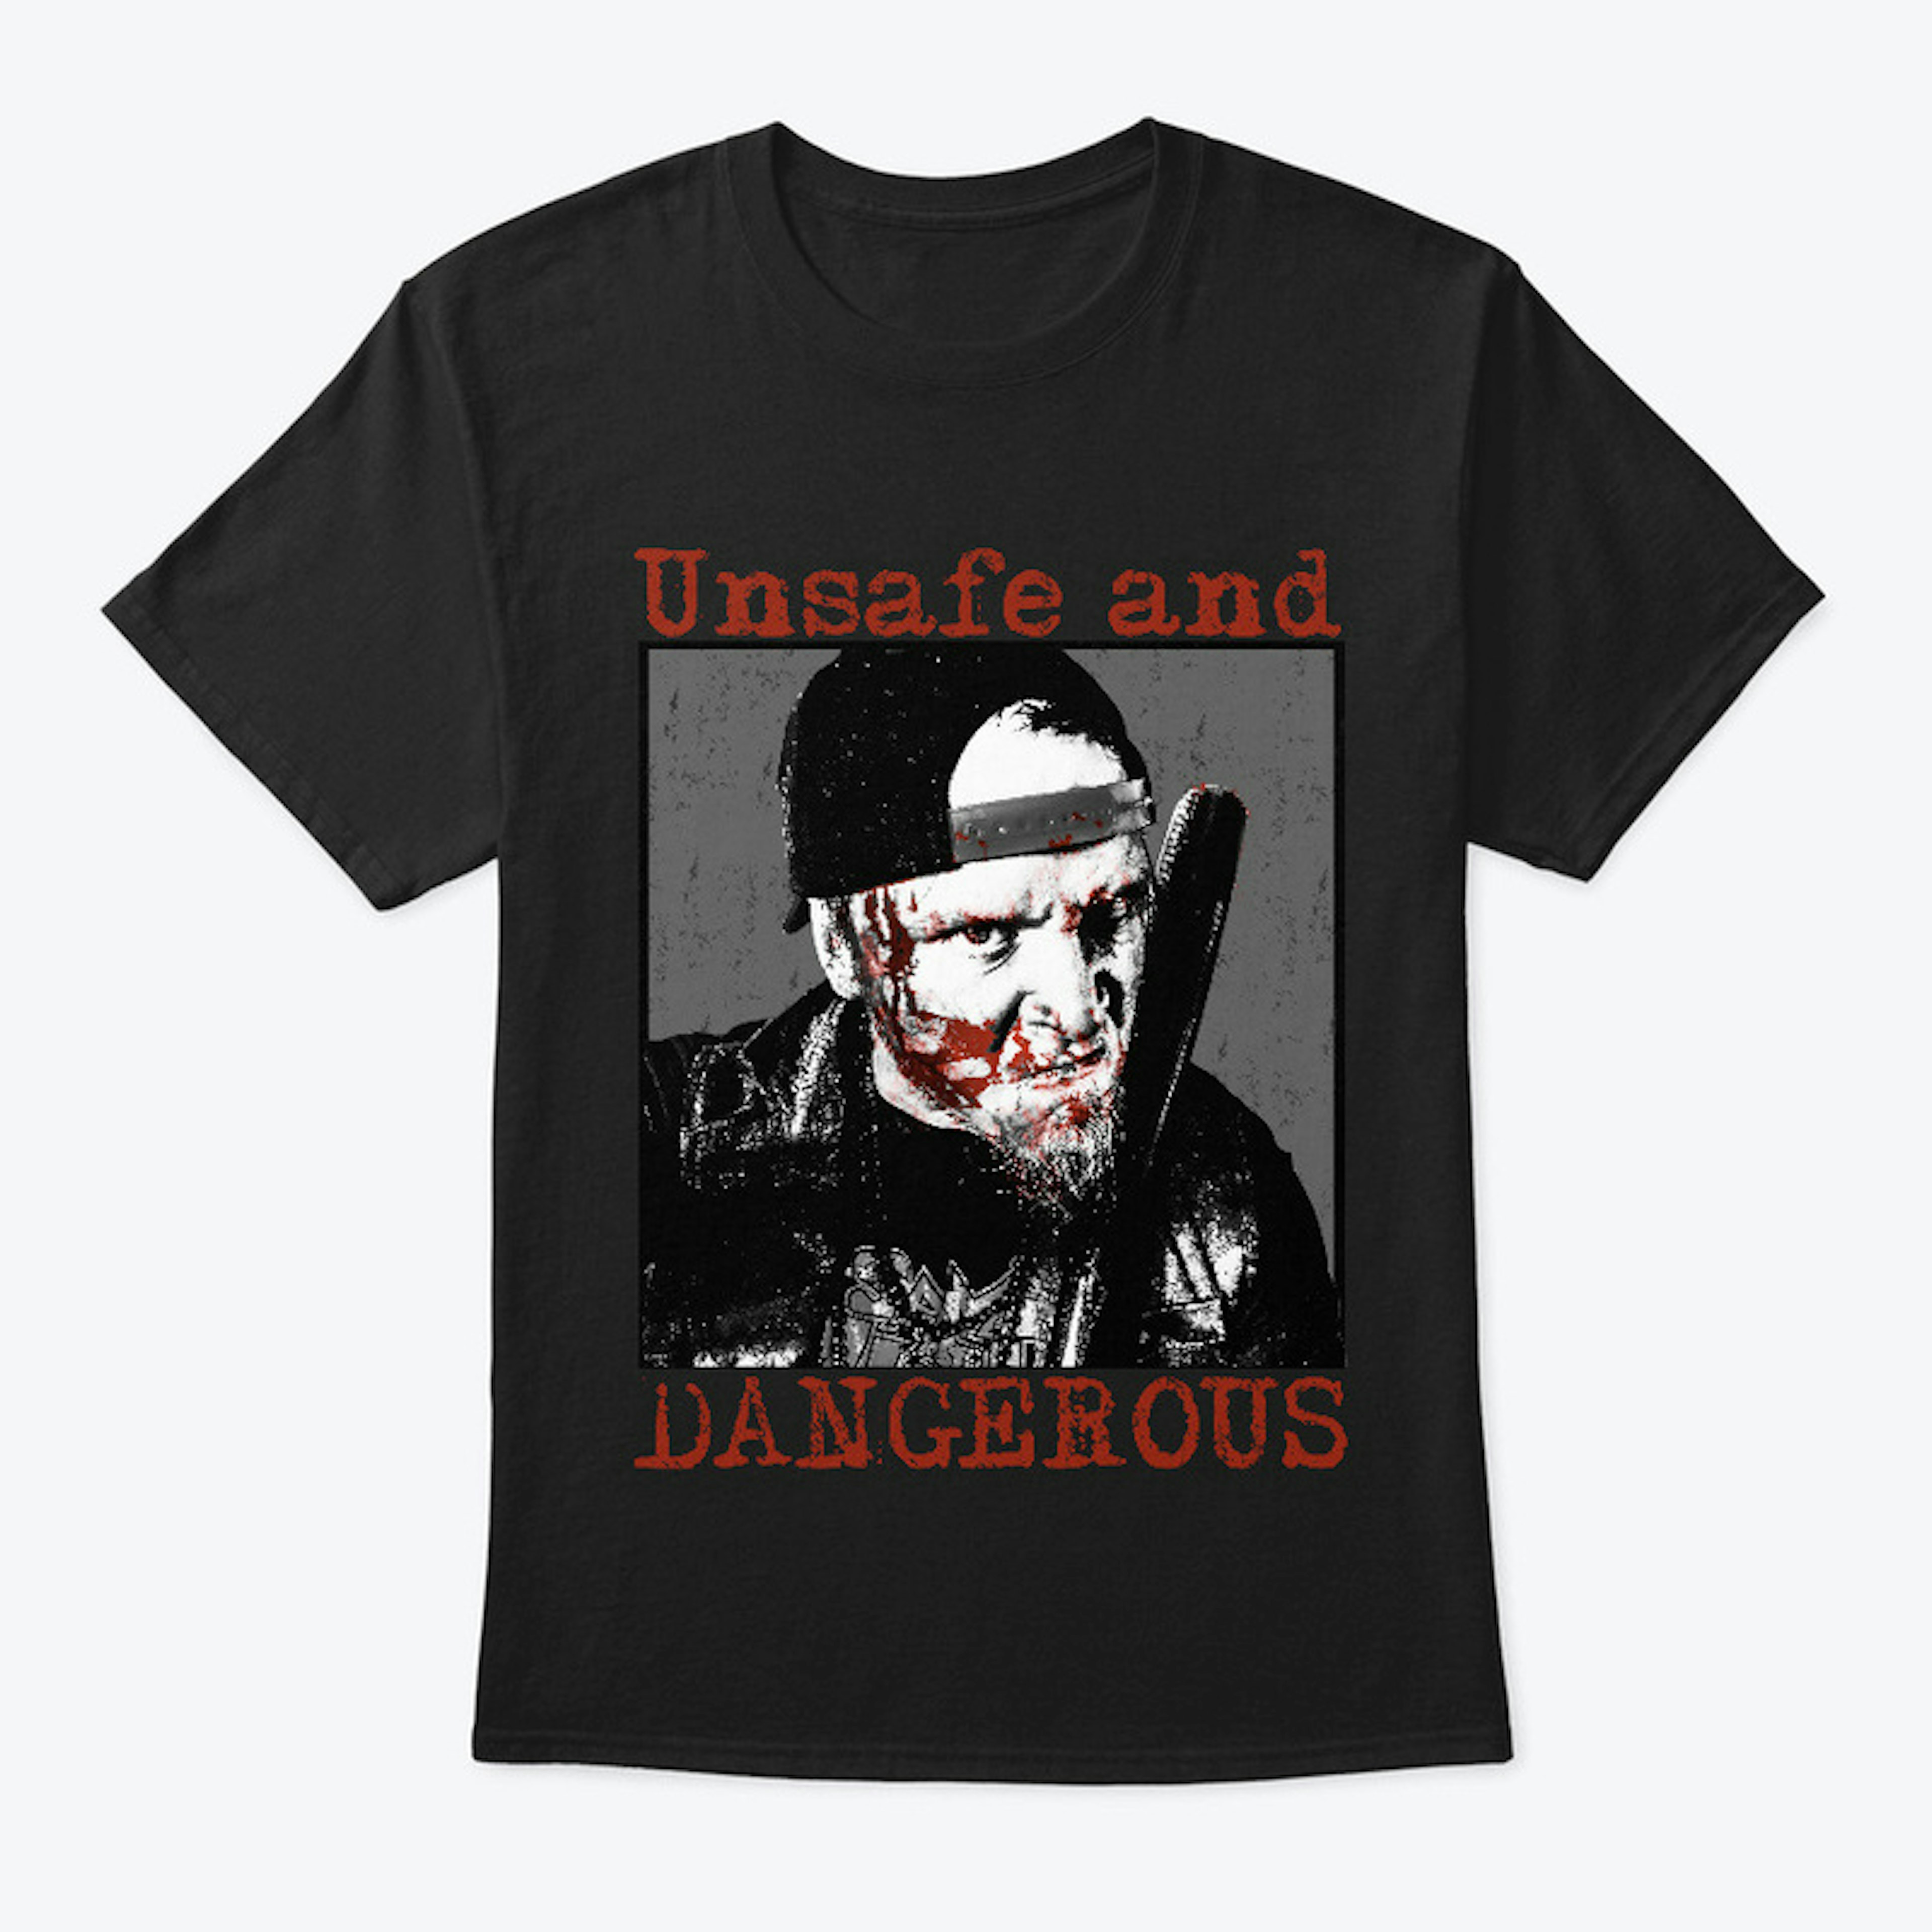 Unsafe & Dangerous - Regular Shirt